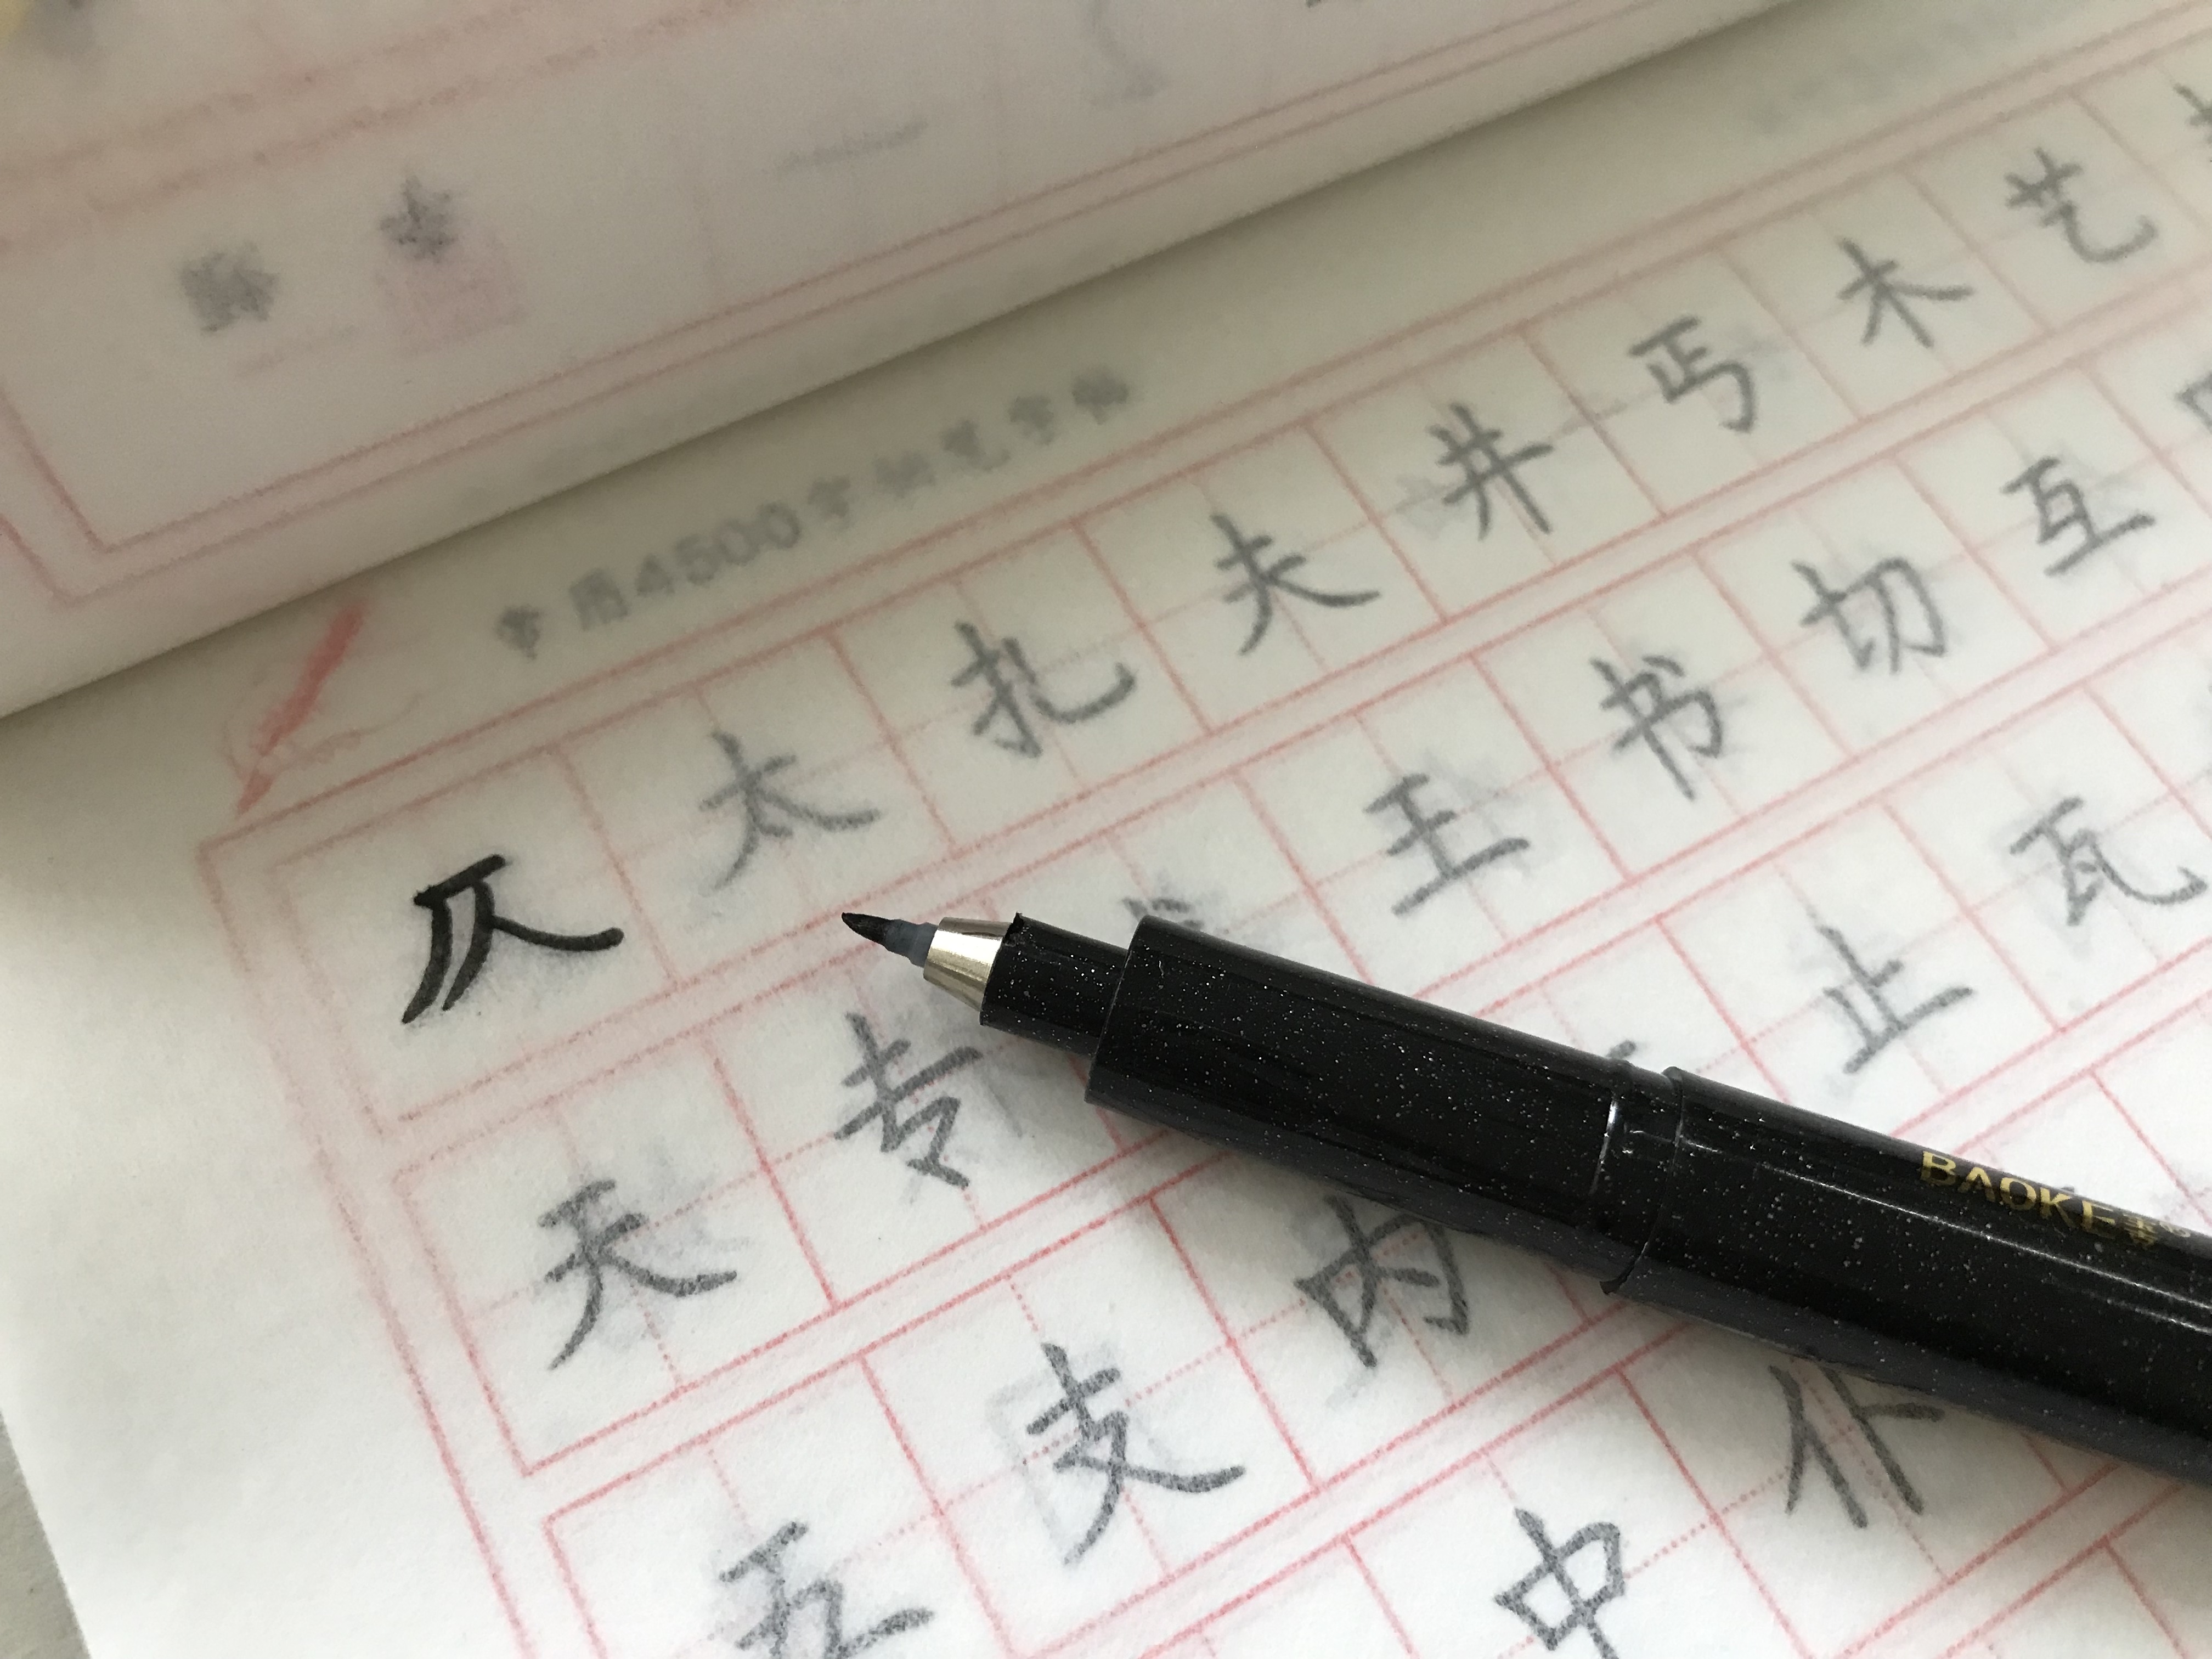 Combo 10 quyển vở luyện viết chữ Hán, chữ Trung Quốc - (không bìa) kèm bút + mực